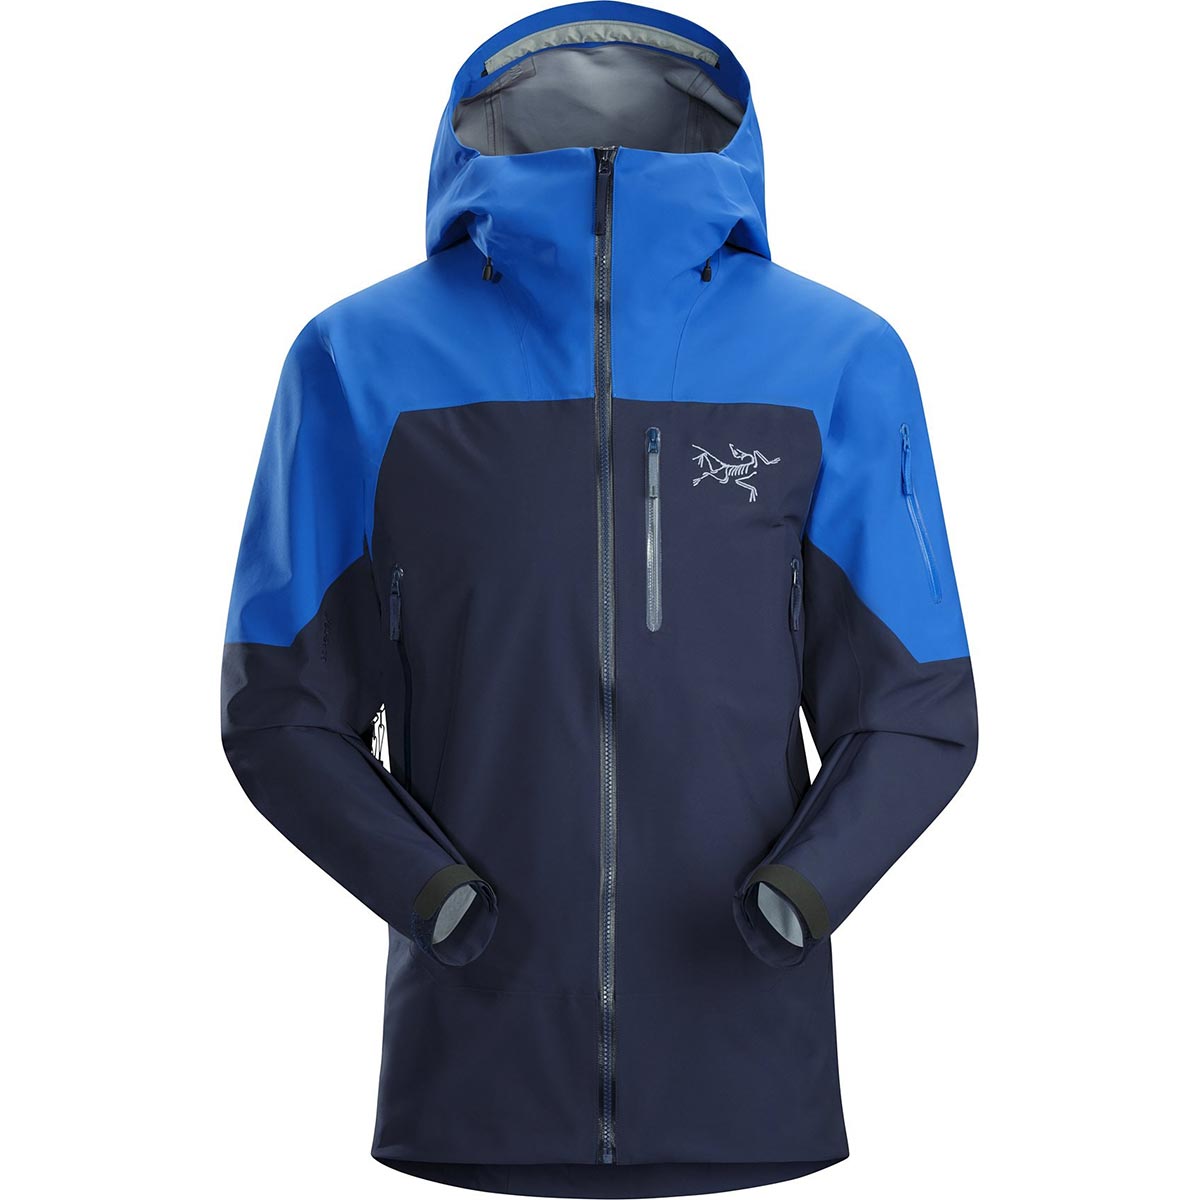 Arc'teryx Sabre LT Jacket, men's, discontinued Fall 2018 colors (free ...